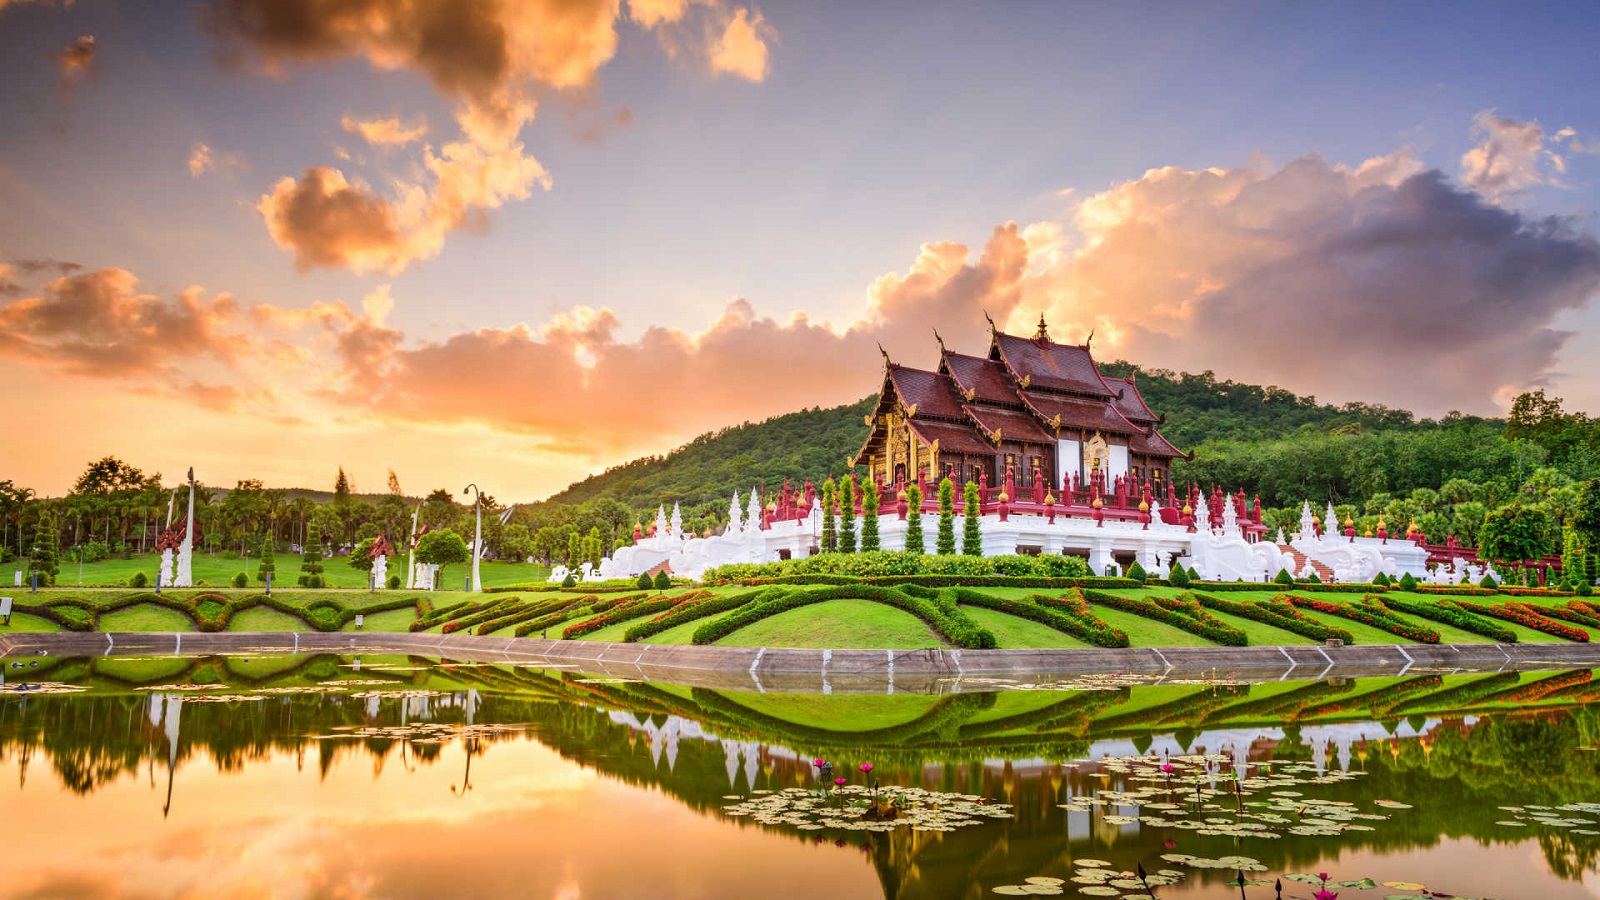 Tour Du Lịch Thái Lan Giá Rẻ: Chiang Mai - Chiang Rai: Charter Riêng Bay Thẳng